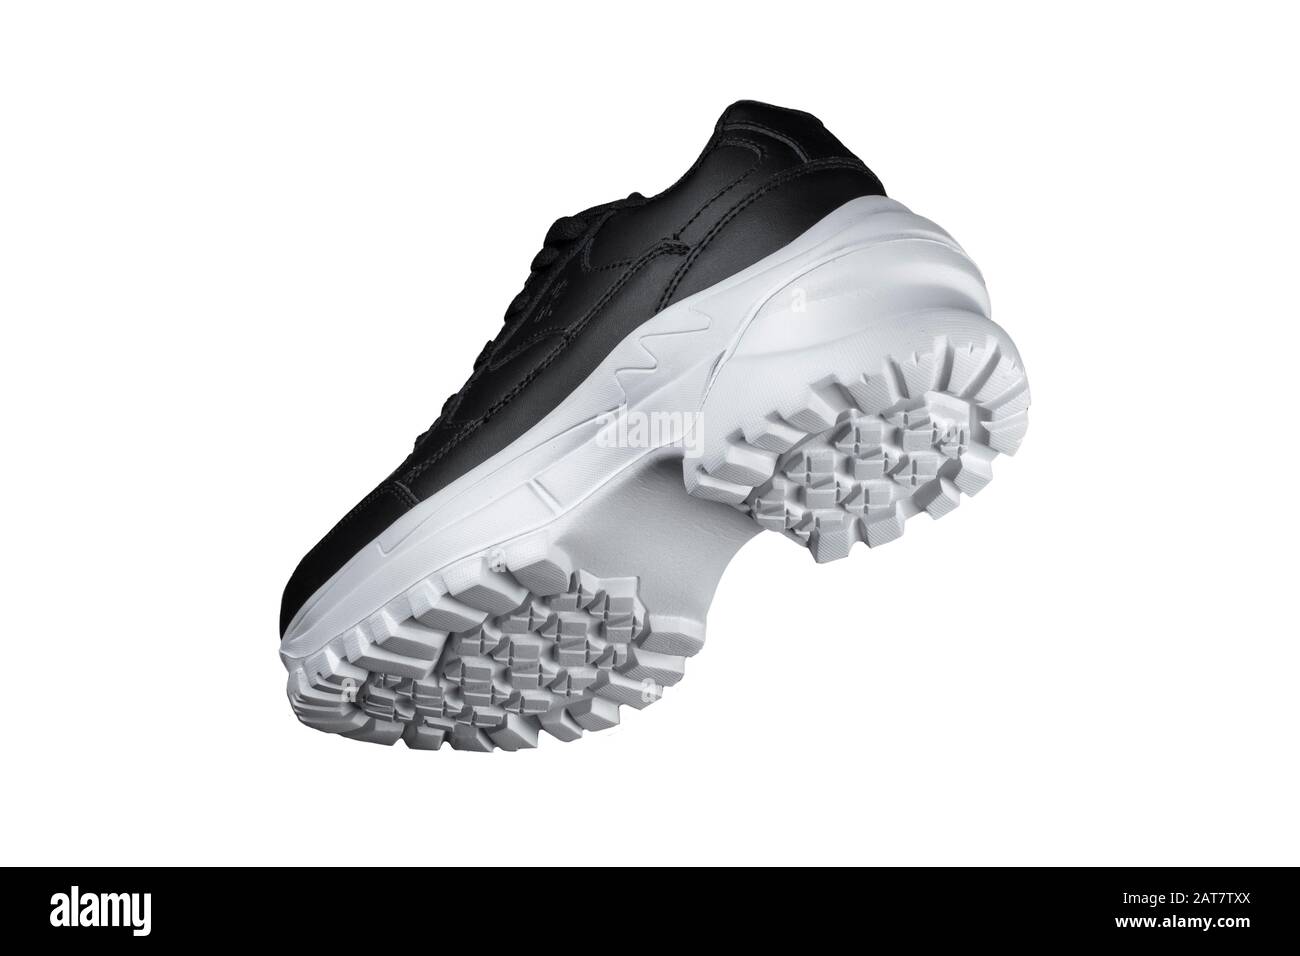 Schwarzer Sneaker mit weißer Sohle. Sportschuhe Stockfotografie - Alamy